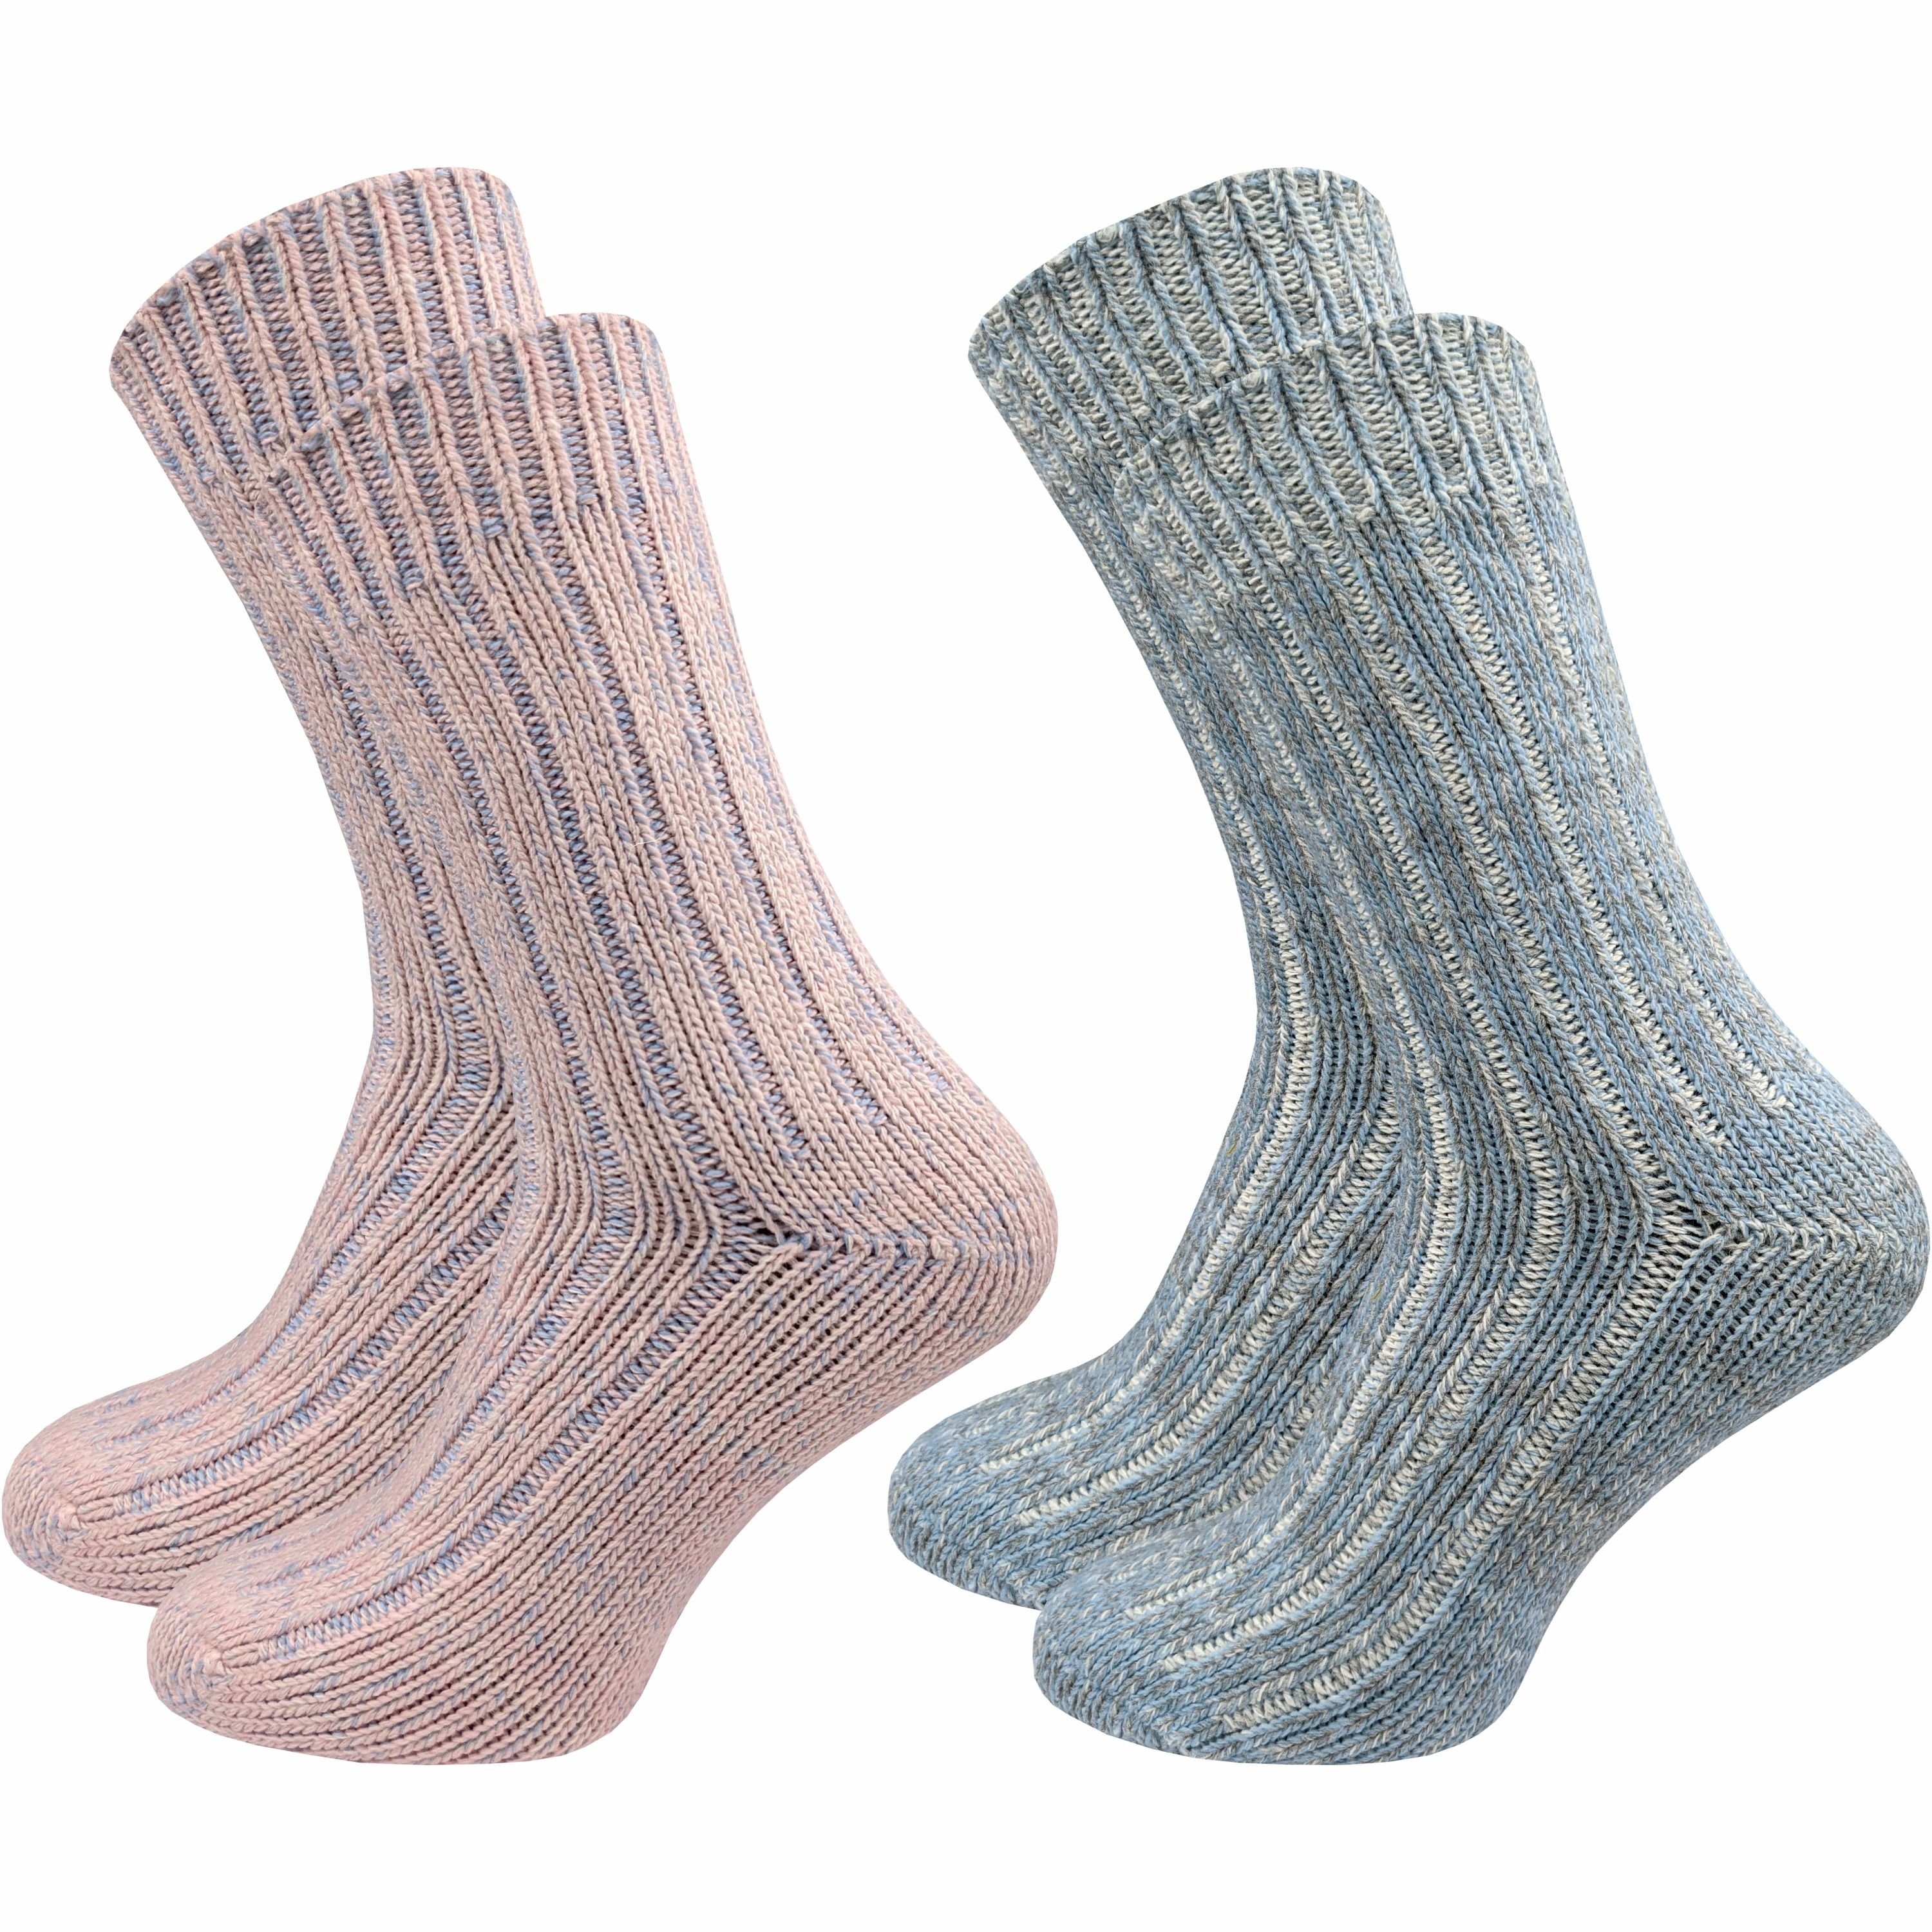 GAWILO Norwegersocken für Damen - Extra warm & weich dank Wolle - Dicke Wintersocken (2 Paar) Wollsocken für warme Füße - auch als Thermosocke geeignet rosa & grau